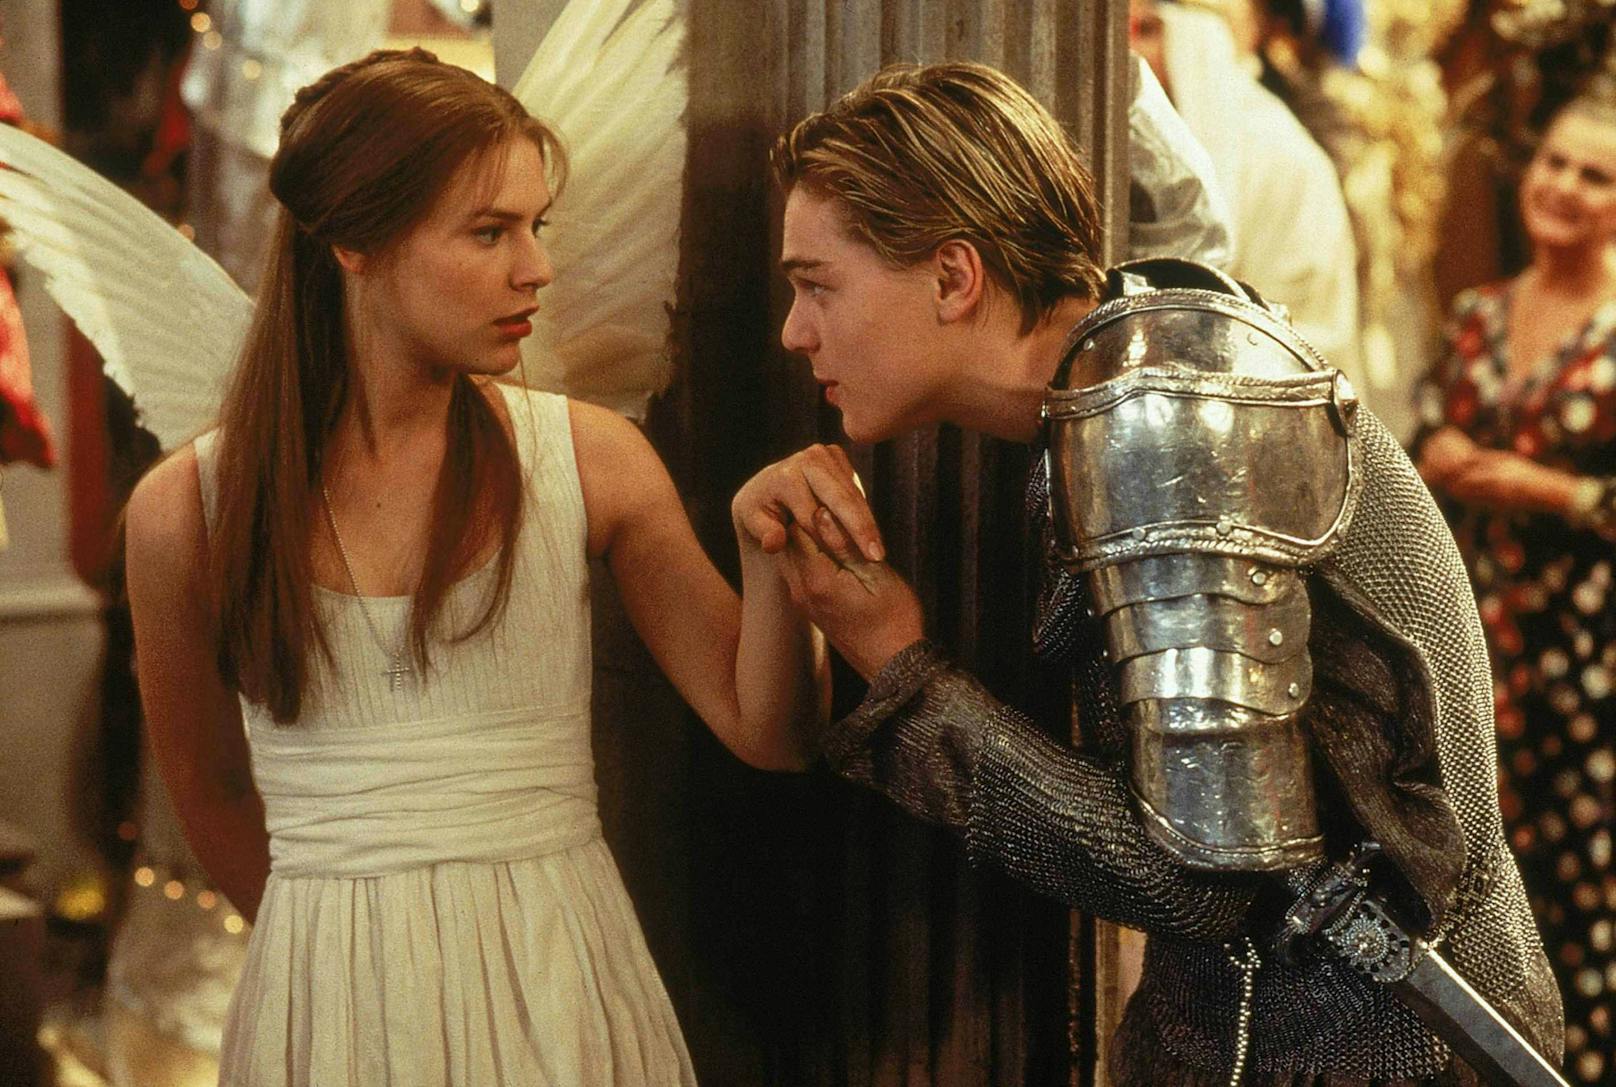 Mit <em>Romeo + Juliet"</em> hatten die Hauptdarsteller <strong>Claire Danes</strong> (li.) und <strong>Leonardo DiCaprio</strong> wenig gemeinsam. Claire fand Leo dermaßen "kindisch", das sie sogar das Rollenangebot für "Titanic" ausschlug und ihren Platz Kate Winslet überließ.